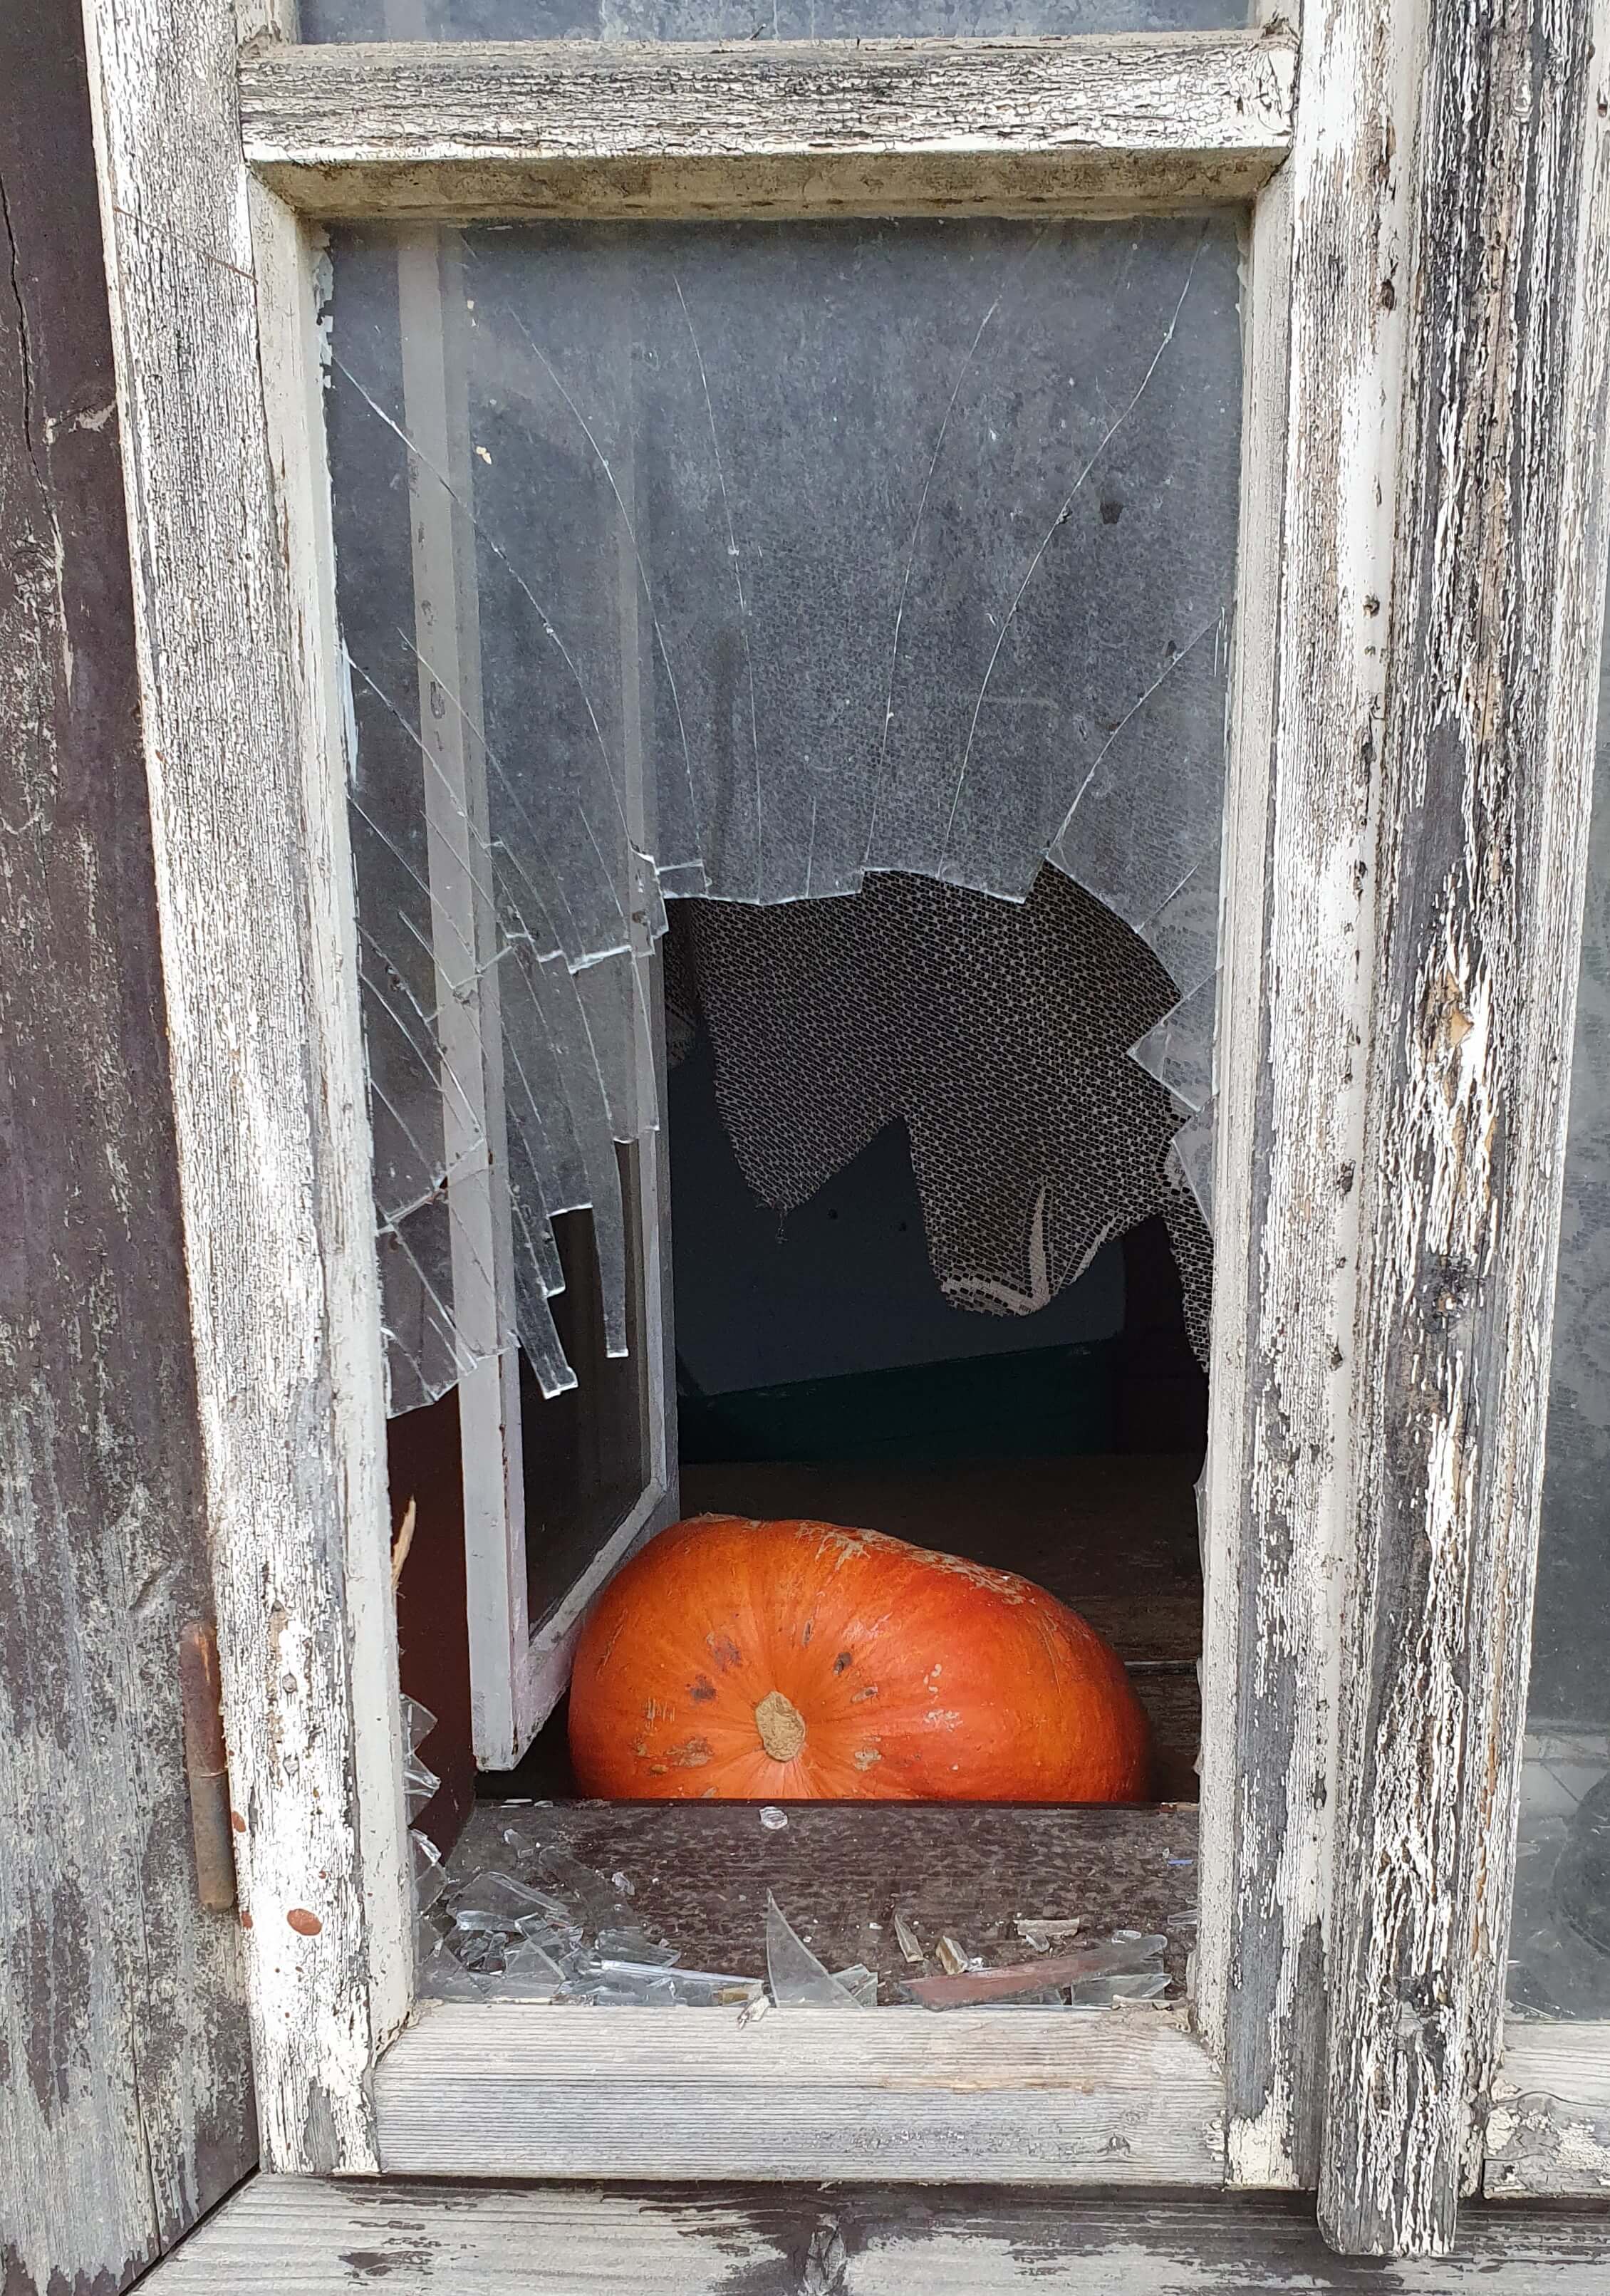 pumpkin as seen through an even more broken window